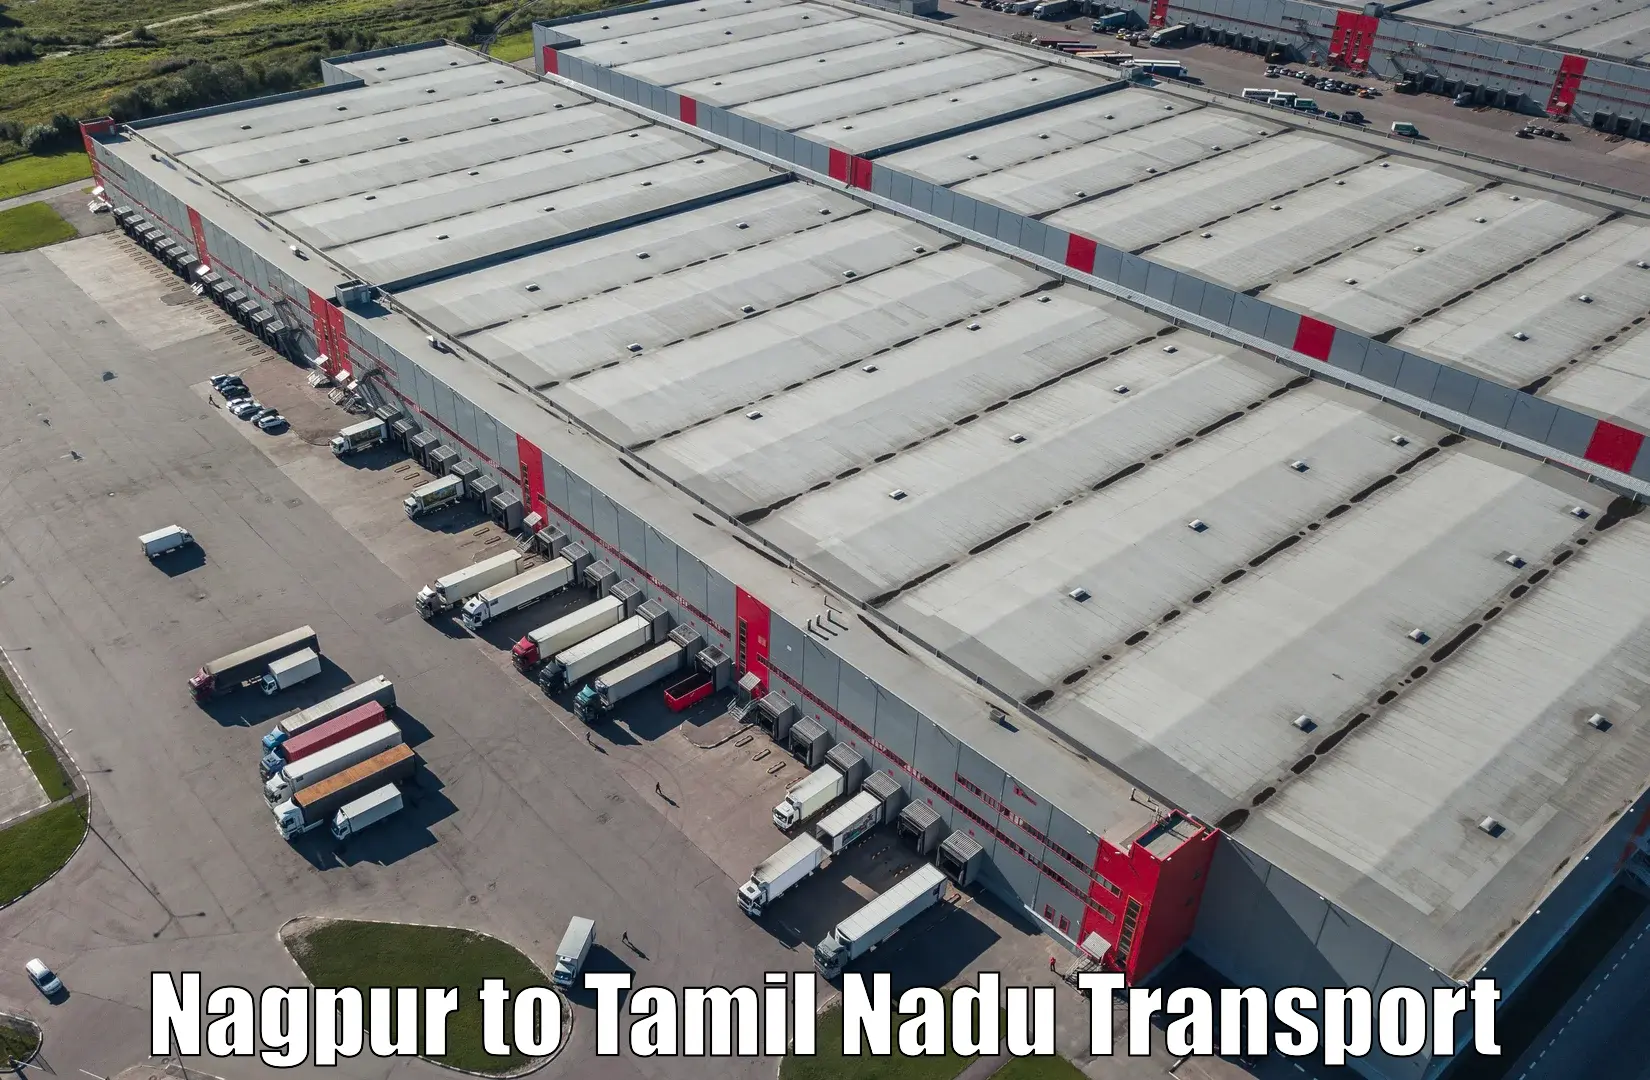 Goods delivery service Nagpur to Maharajapuram